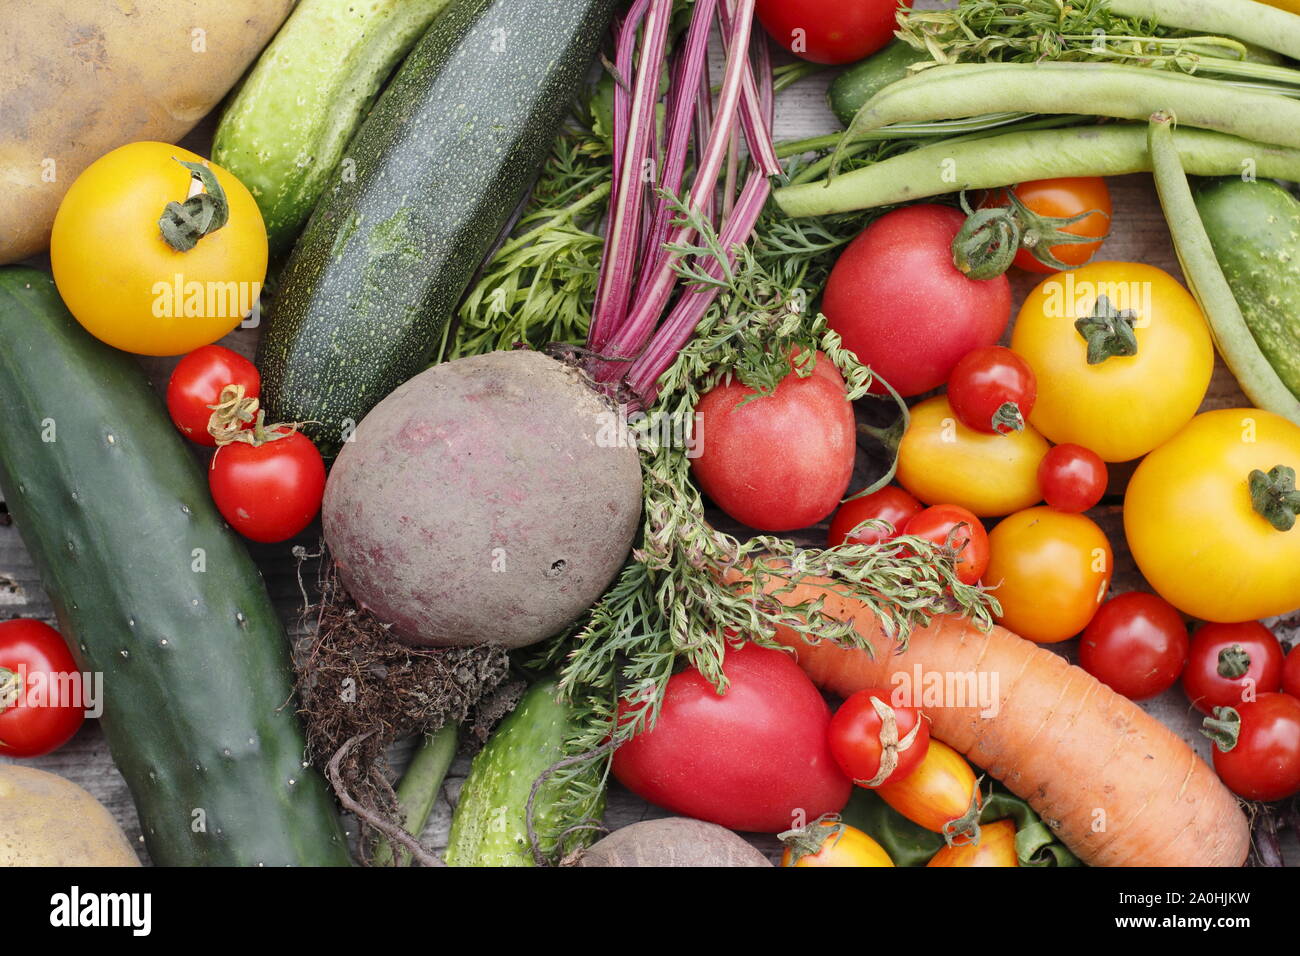 Appena raccolto homegrown verdura biologica inclusa la zucchina, fagiolini, barbabietole, carote, patate, pomodori e cetrioli. Regno Unito Foto Stock